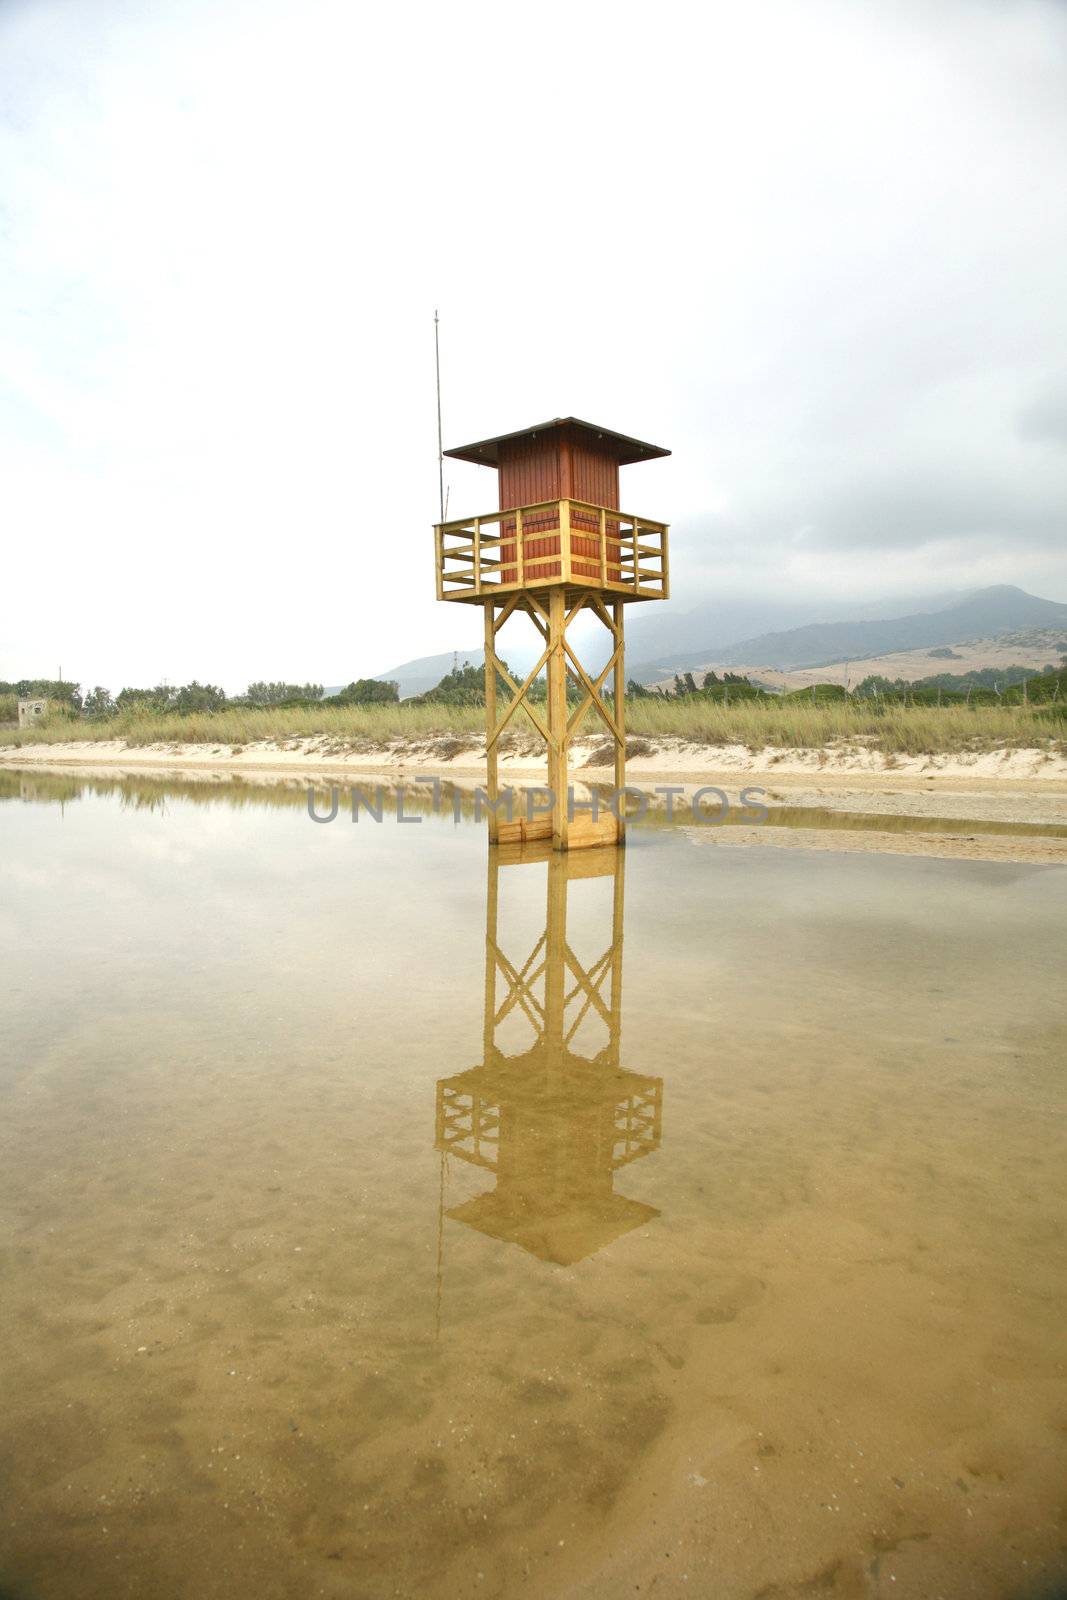 beachguard tower next to the ocean in a tarifa's beach